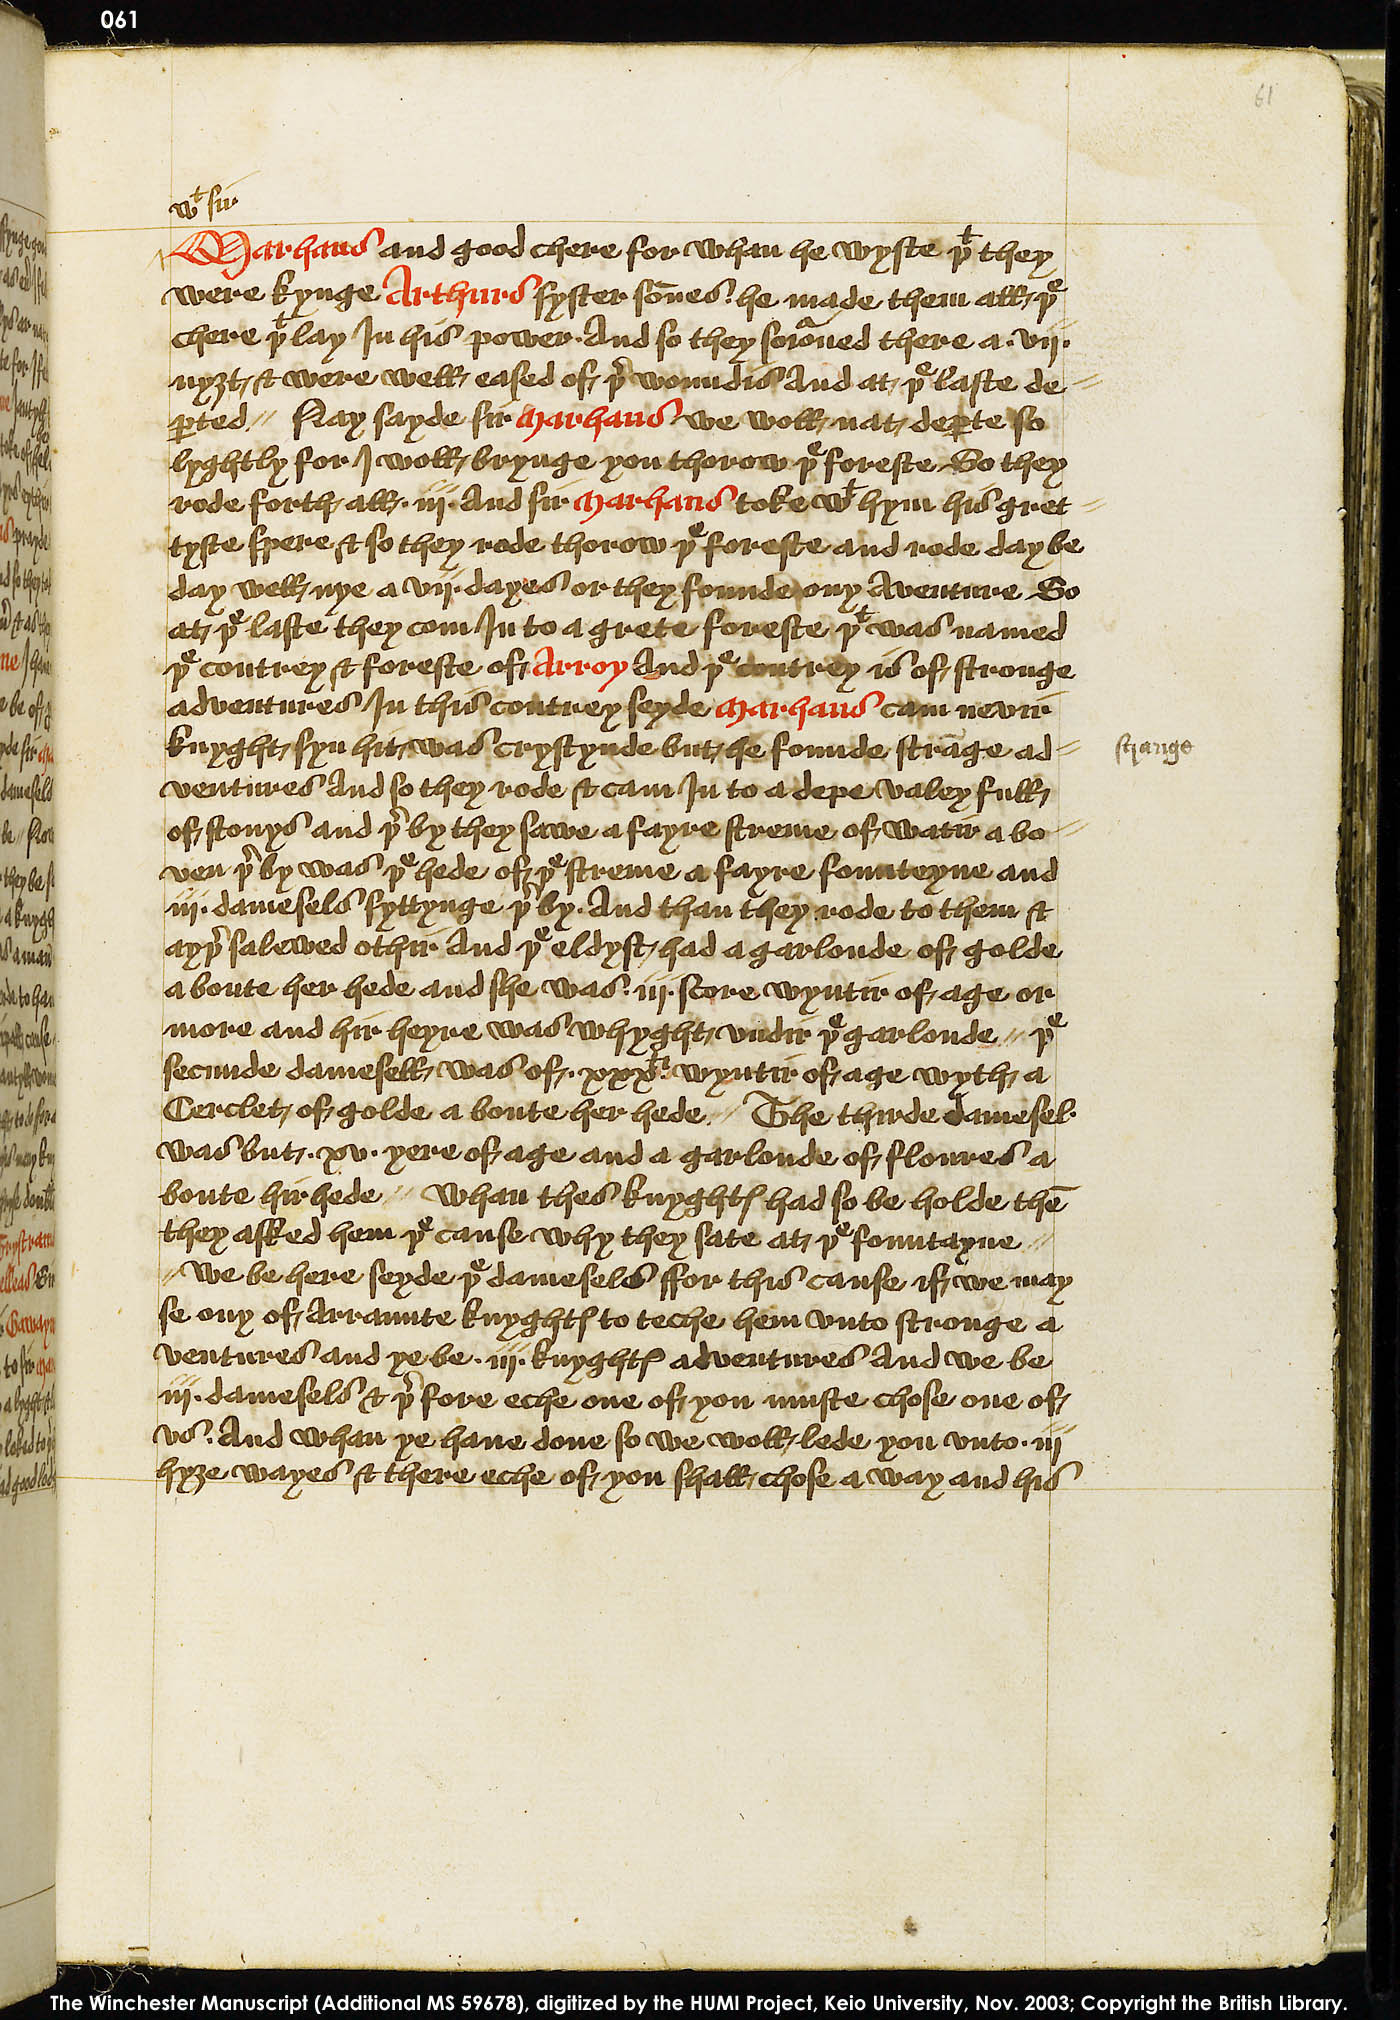 Folio 61r